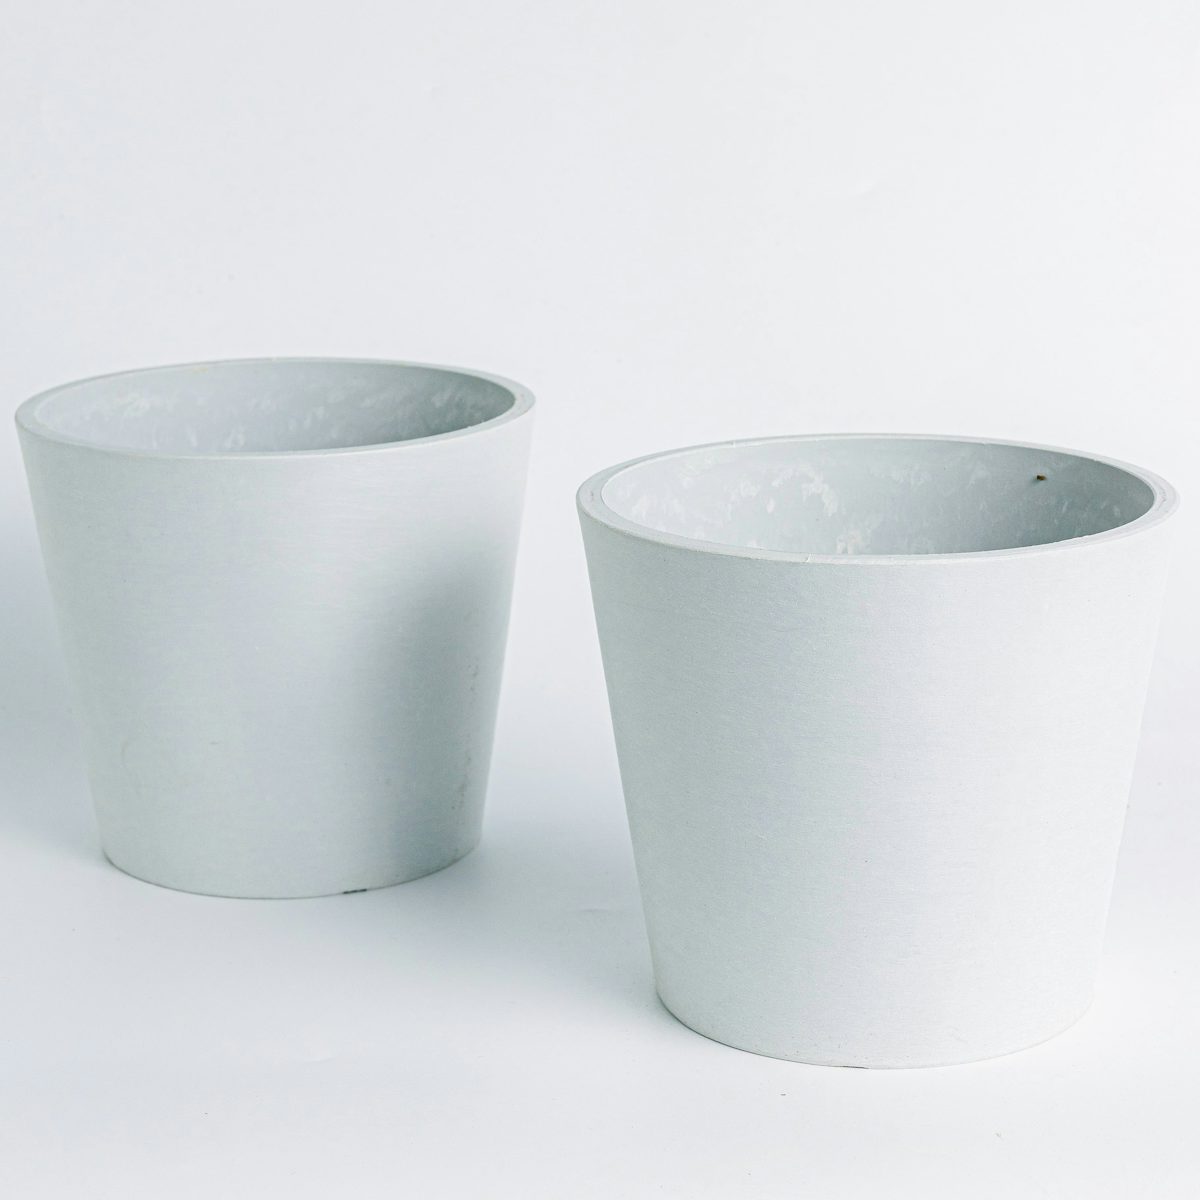 Eco Amsterdam White - M/15cm - Duo Pots